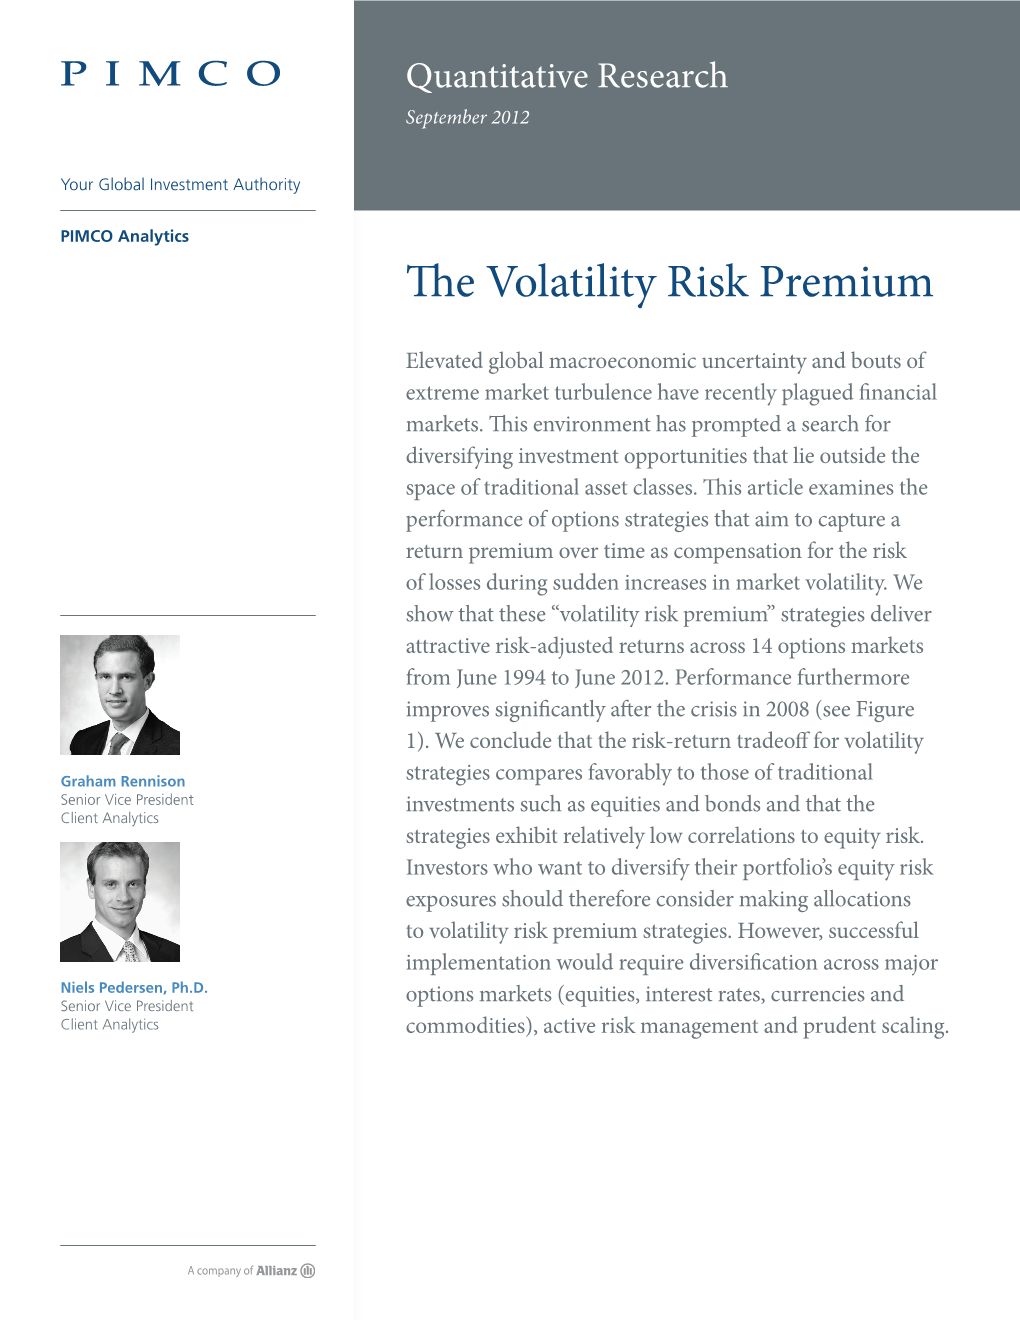 The Volatility Risk Premium